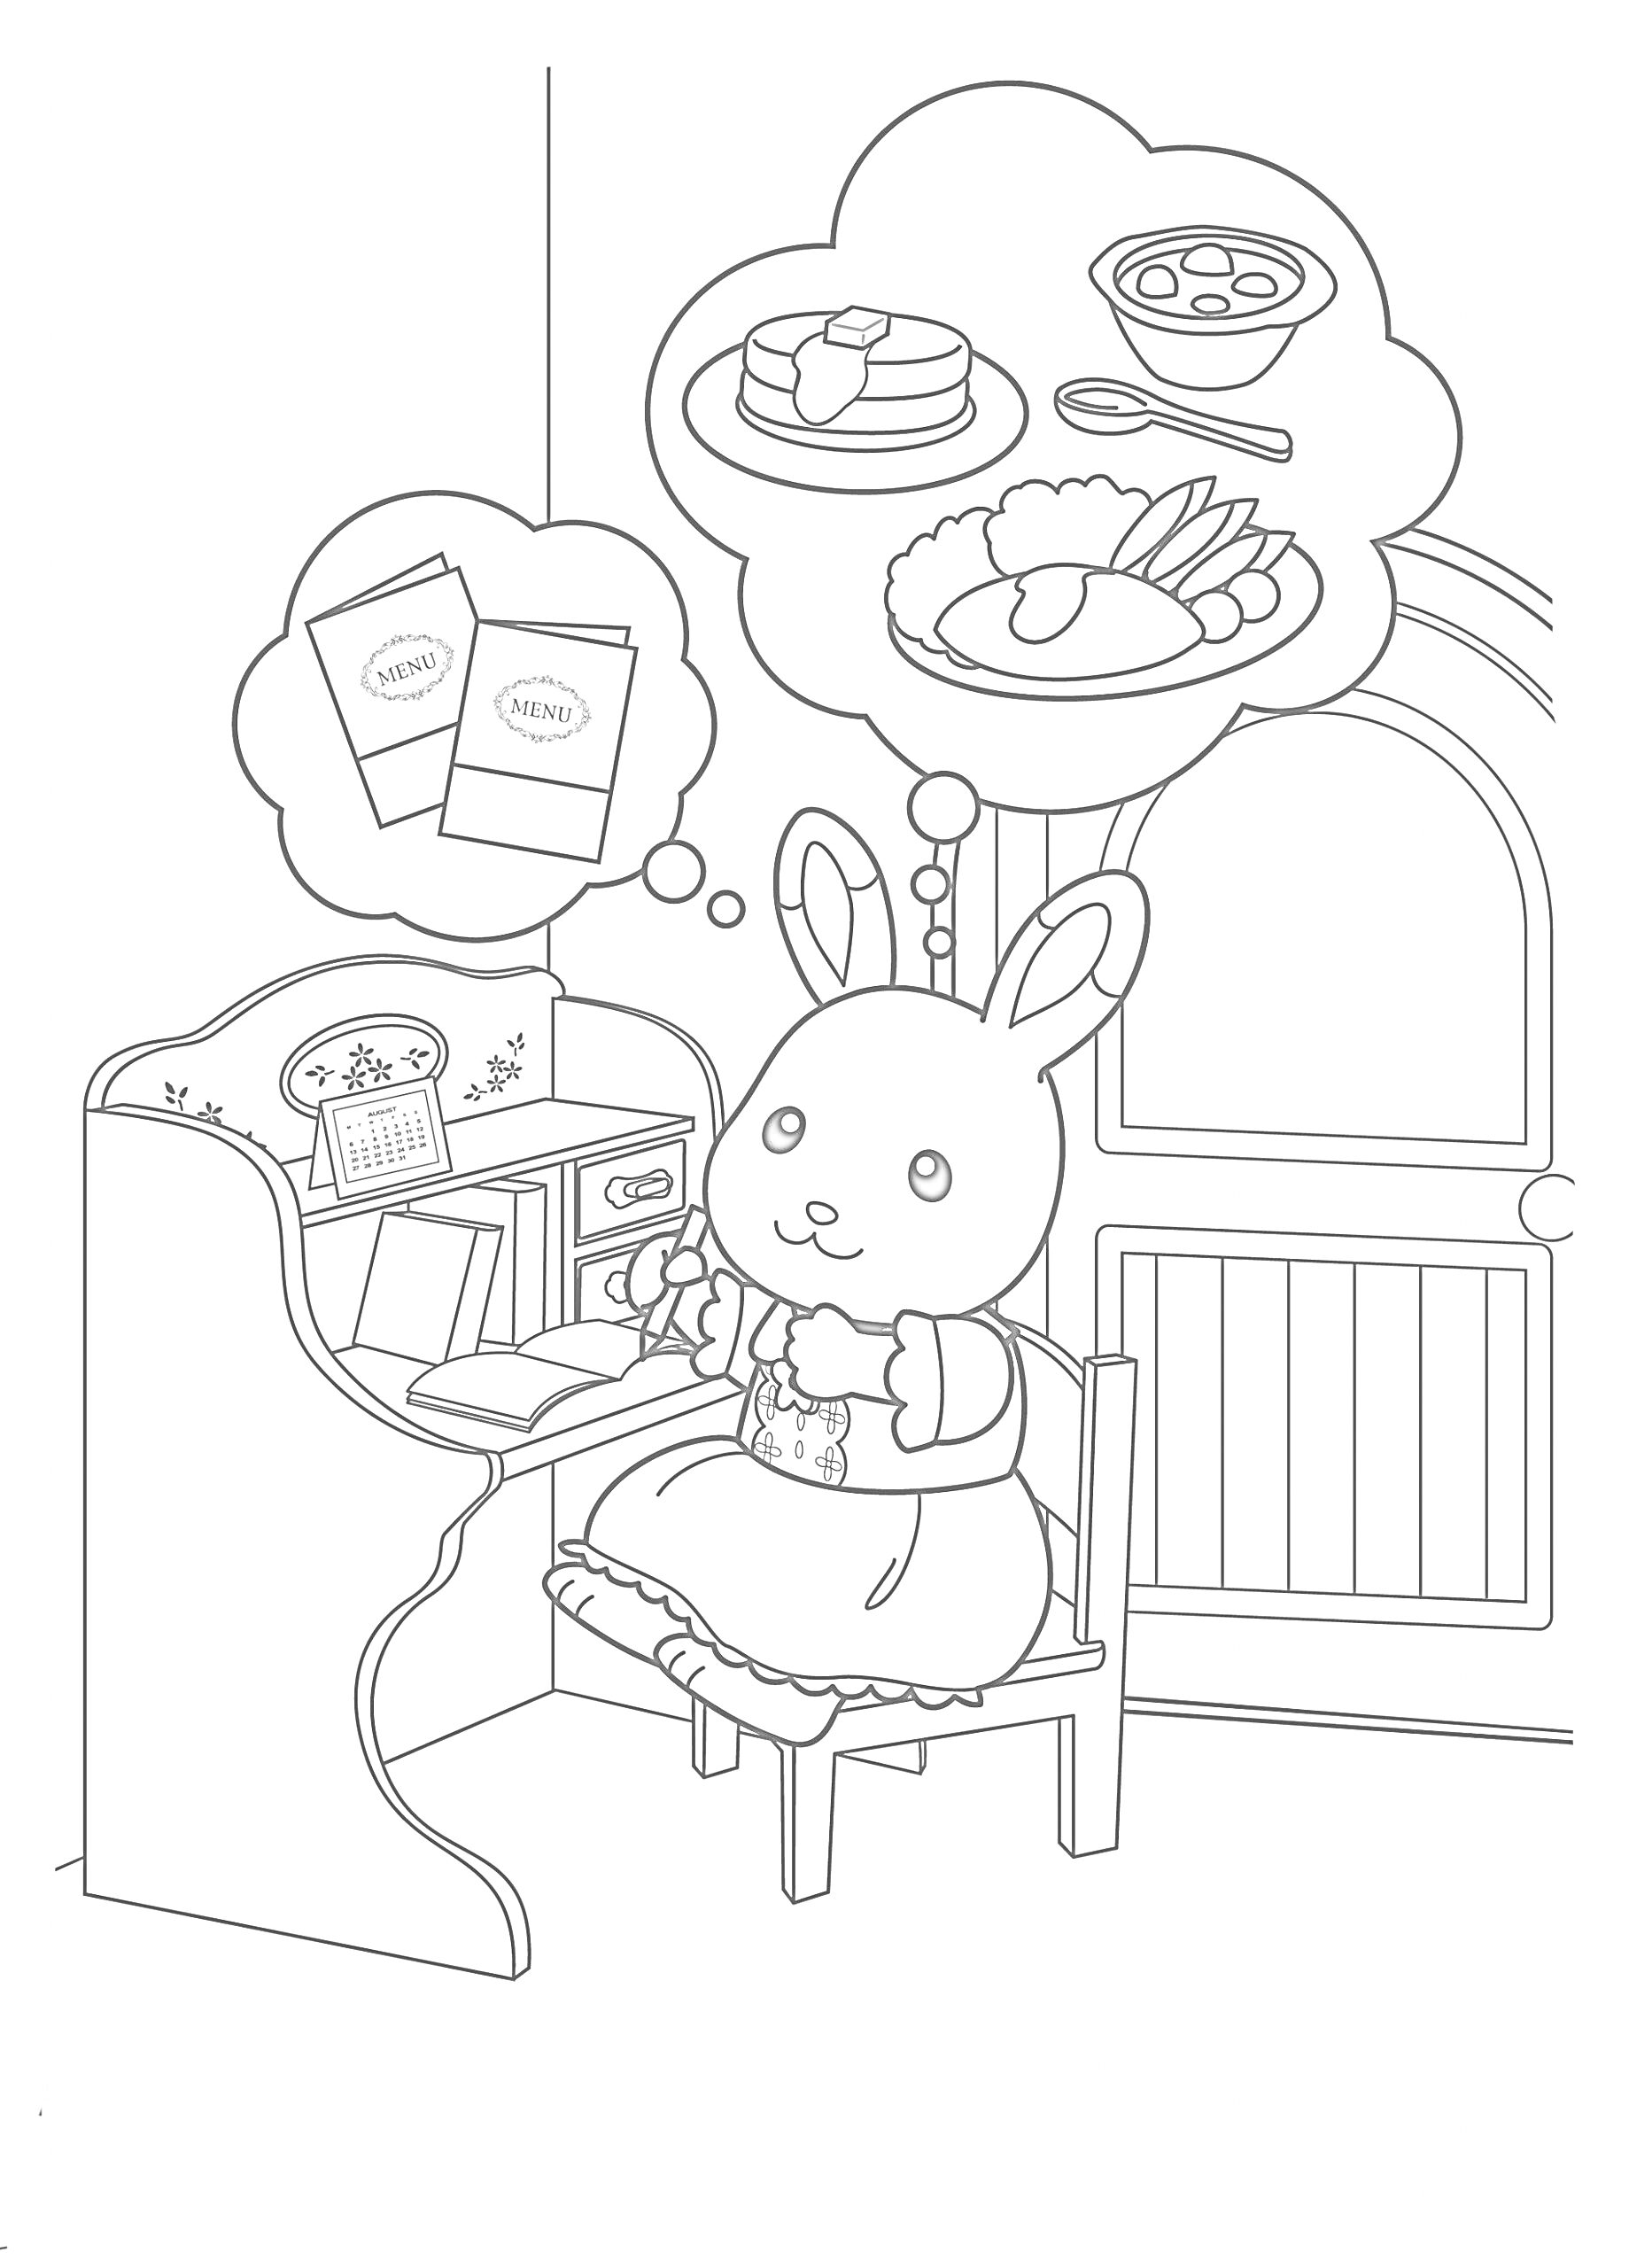 Кролик на кухне с мечтами о еде и рецептах